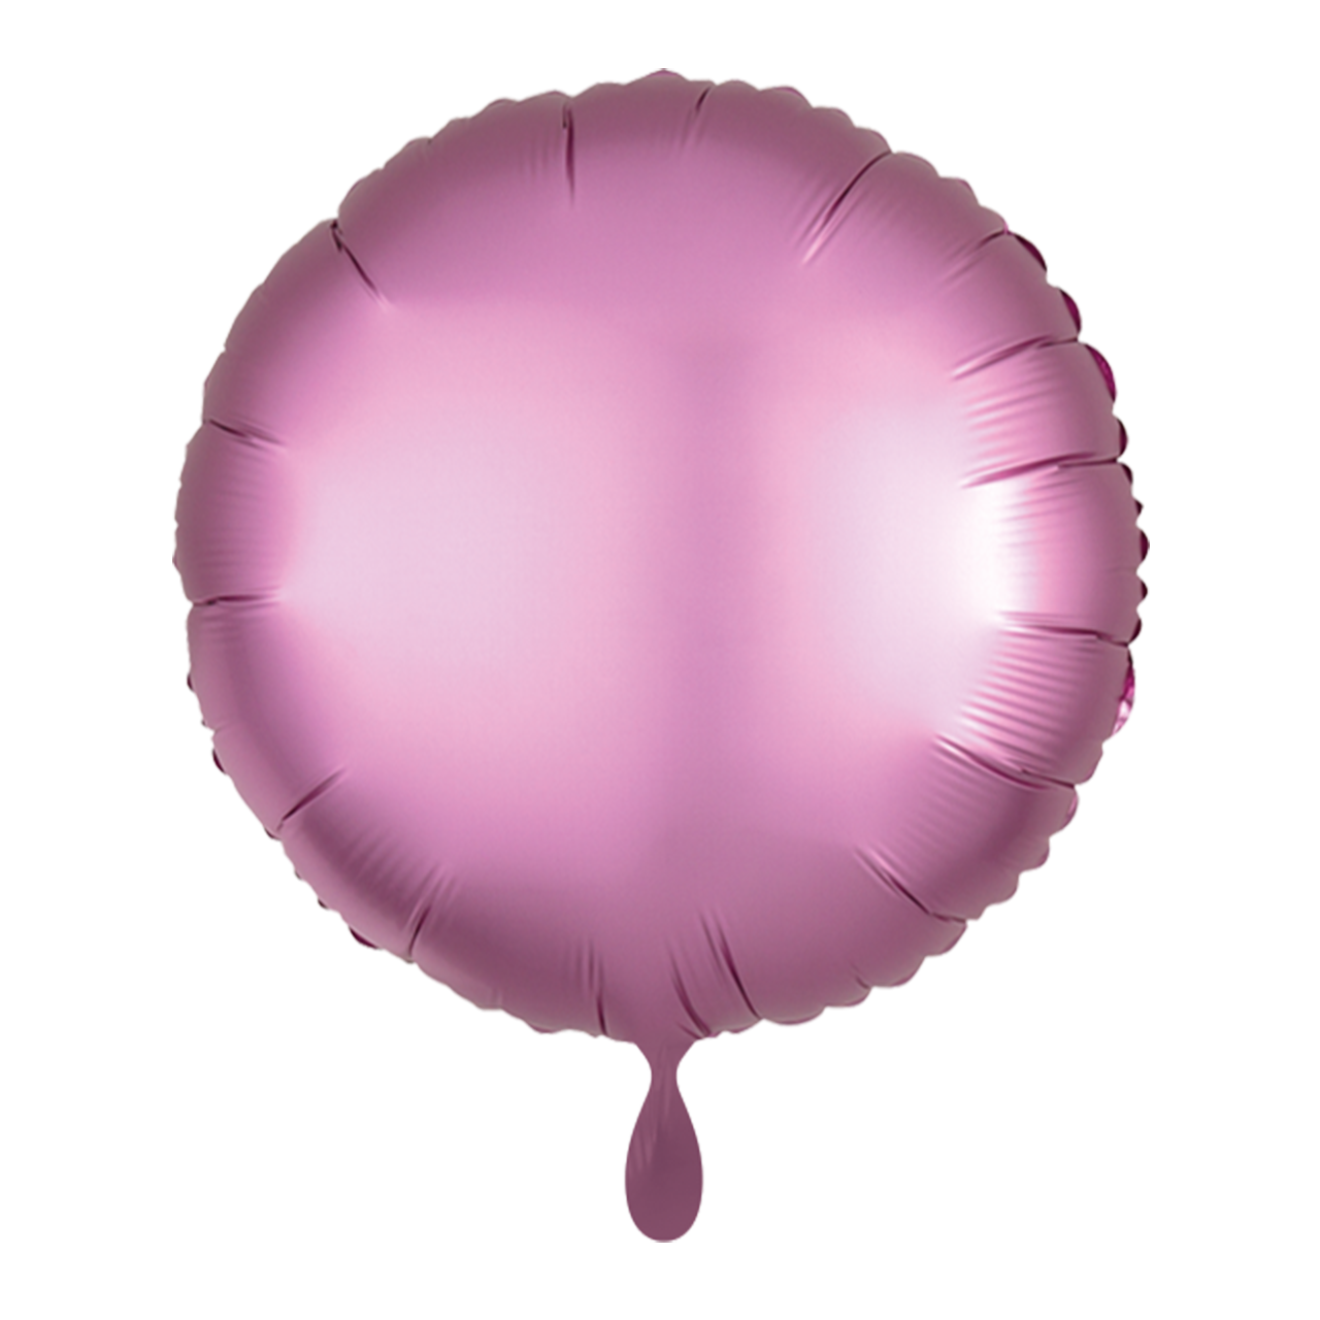 1 Balloon - Rund - Satin - Rosa Flamingo